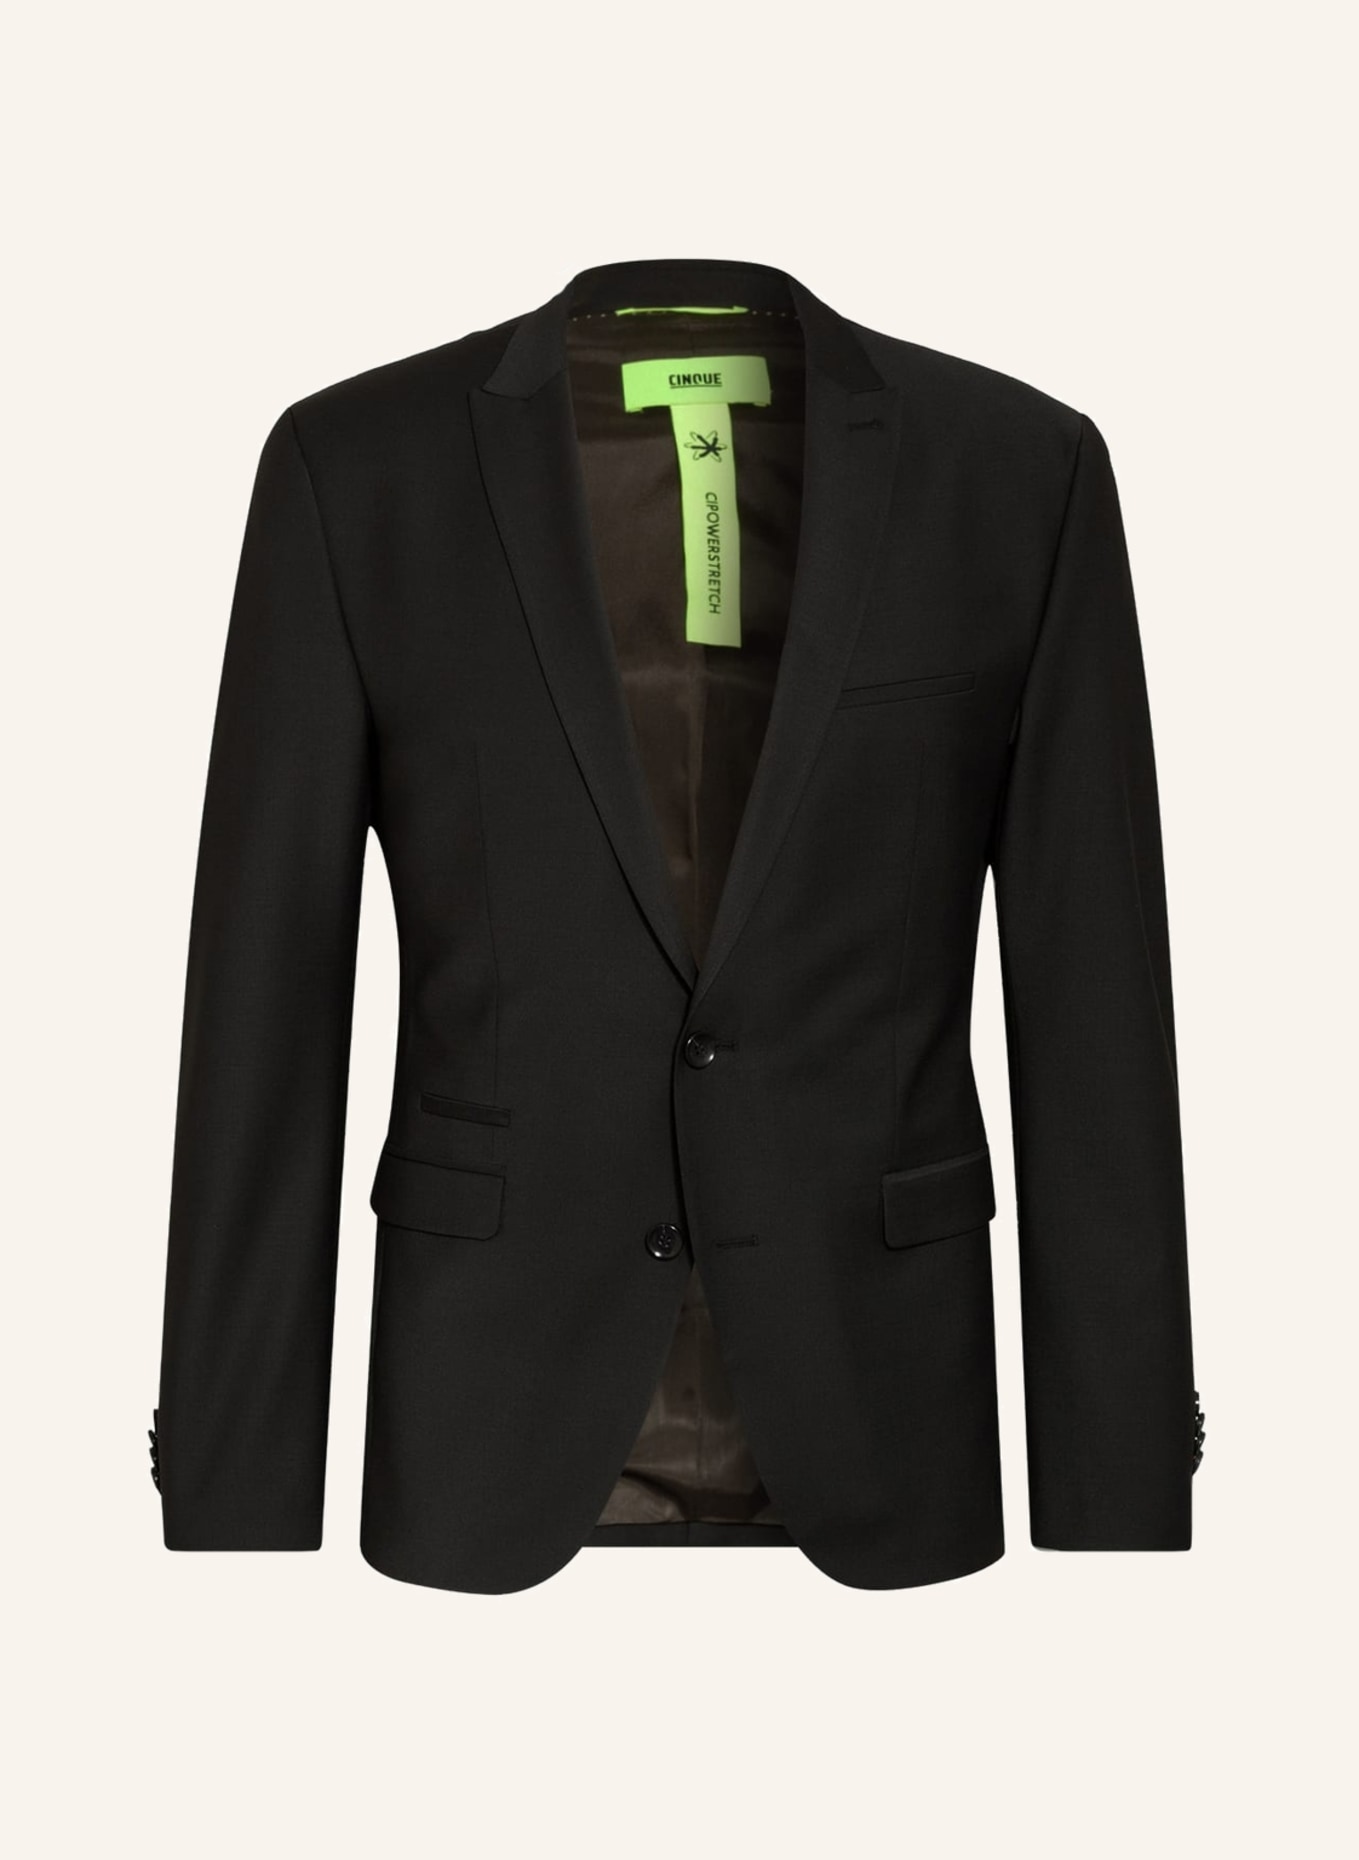 CINQUE Suit jacket CICASTELLO super slim fit, Color: 99 (Image 1)